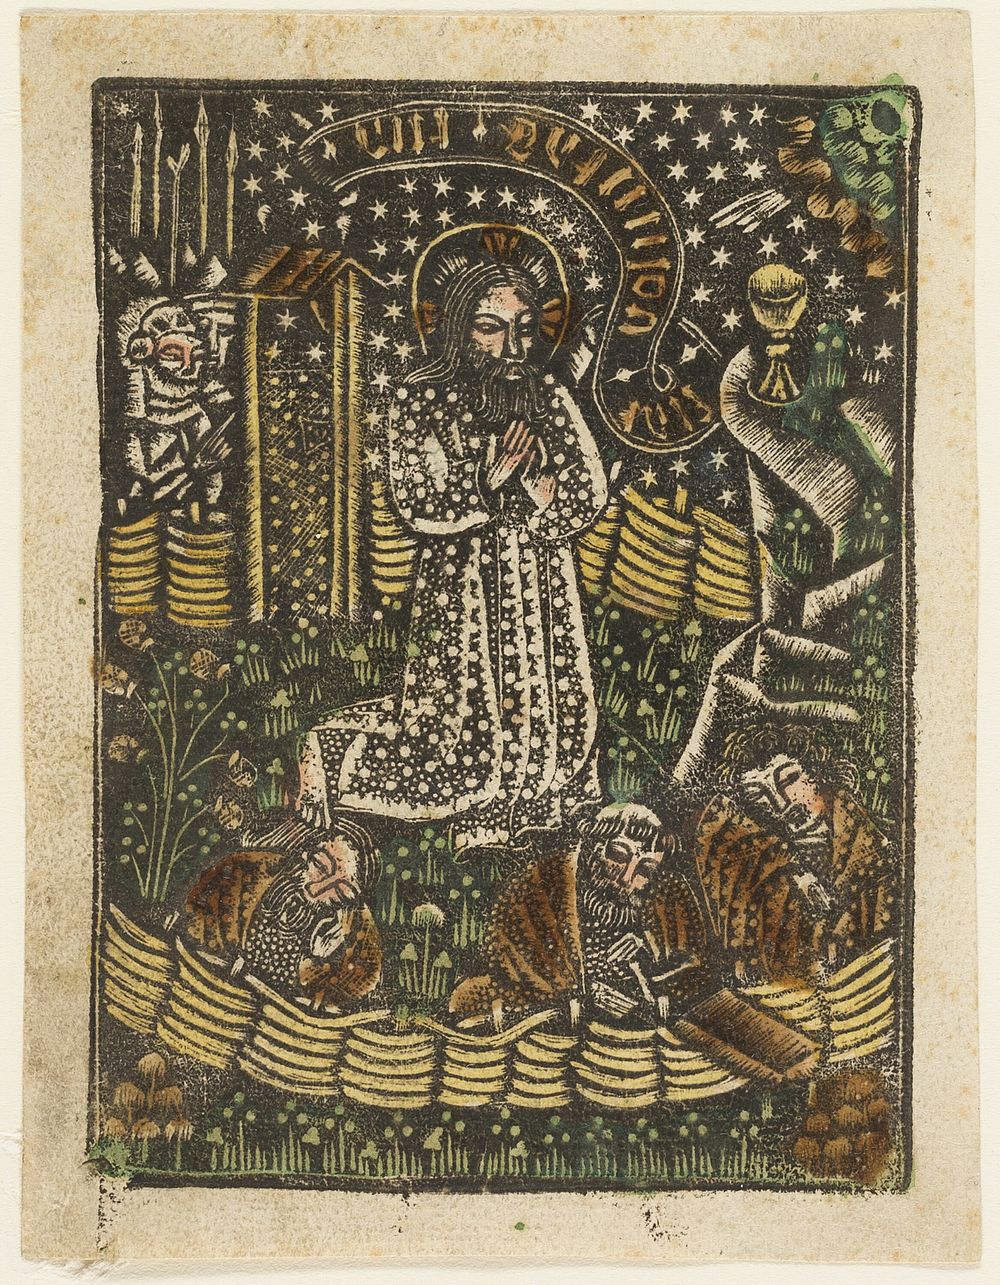 Christ in the Garden of Gethsemane by Unknown artist